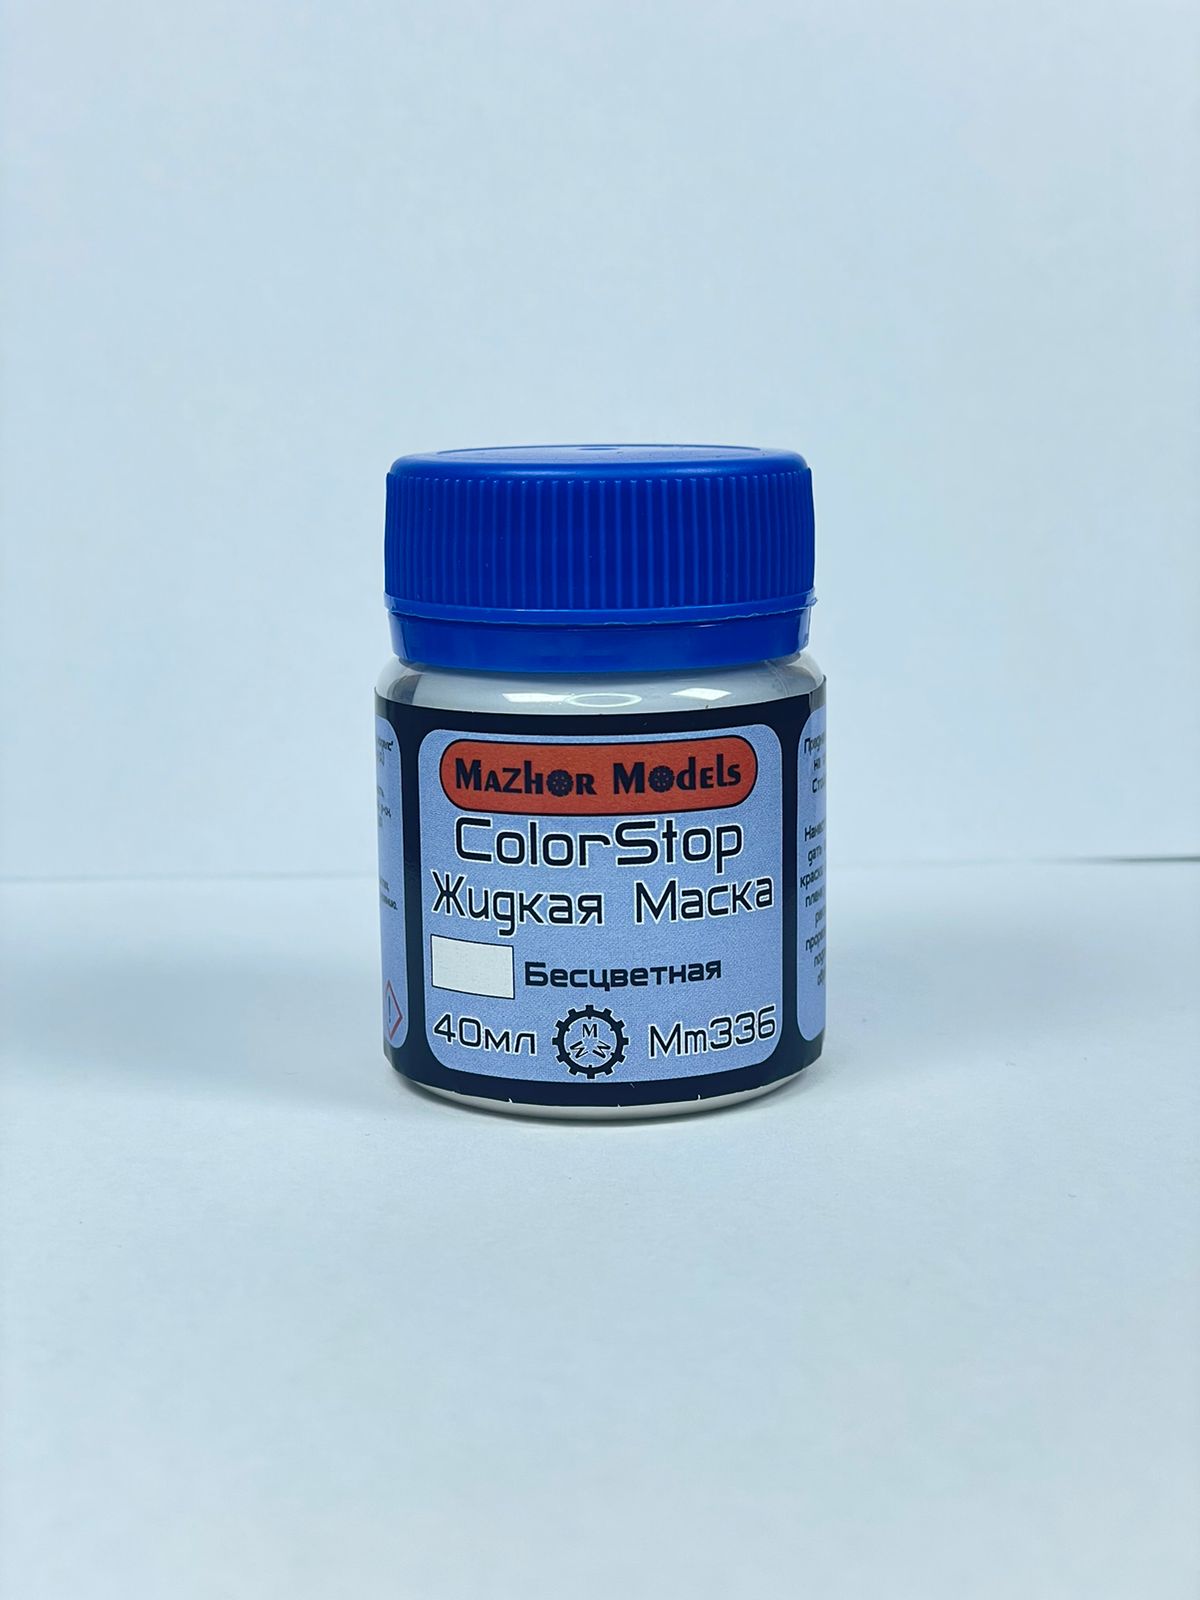 MM336  специальные жидкости  Жидкая маска бесцветная 40 мл.